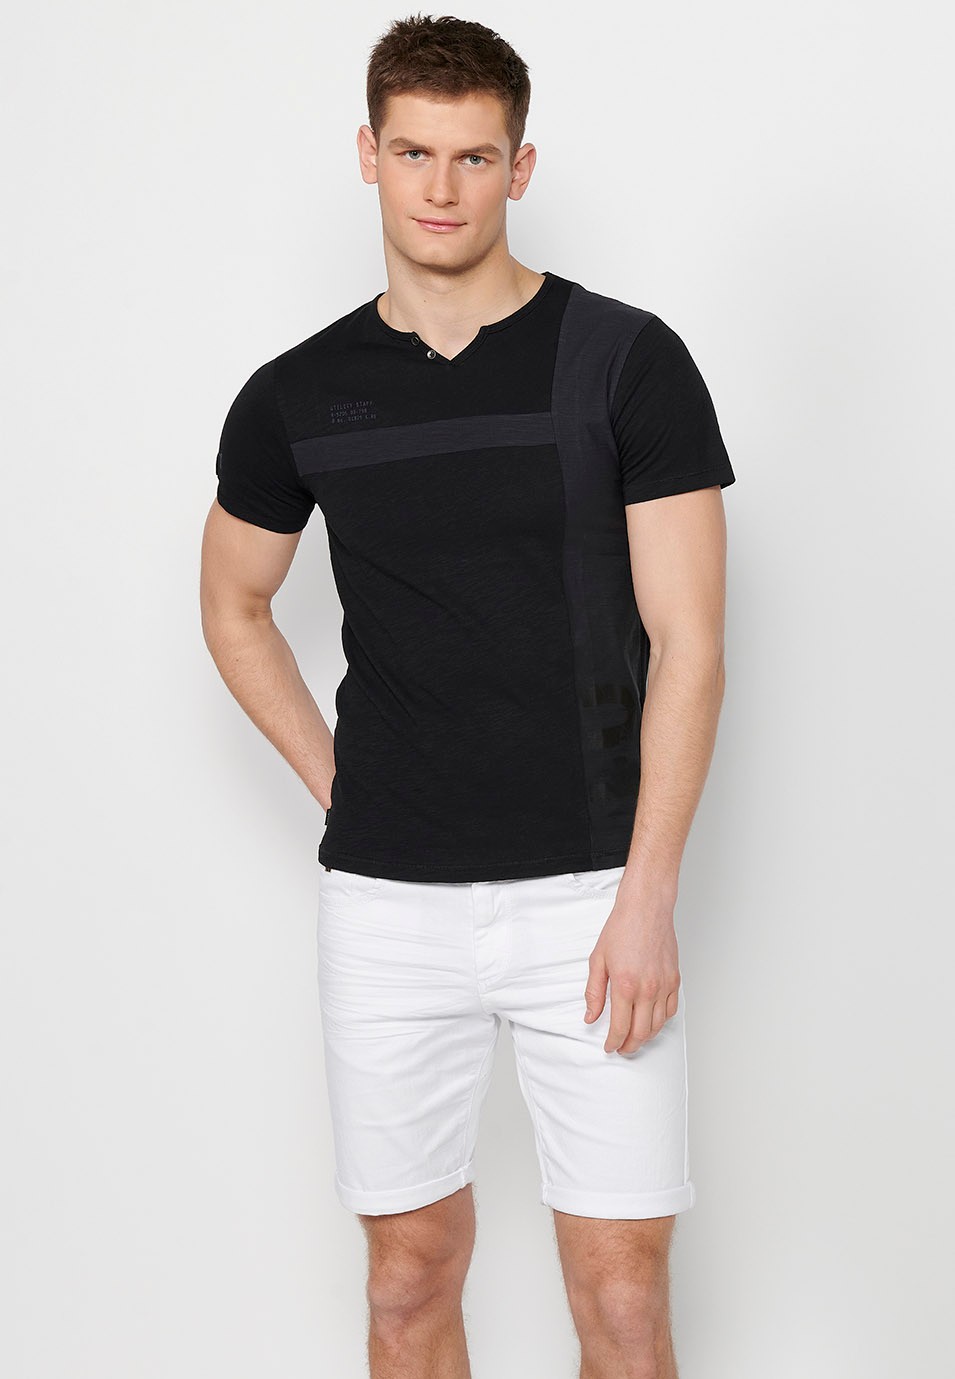 Camiseta de manga corta de algodon, cuello redondo con abertura con botón, color negro para hombre